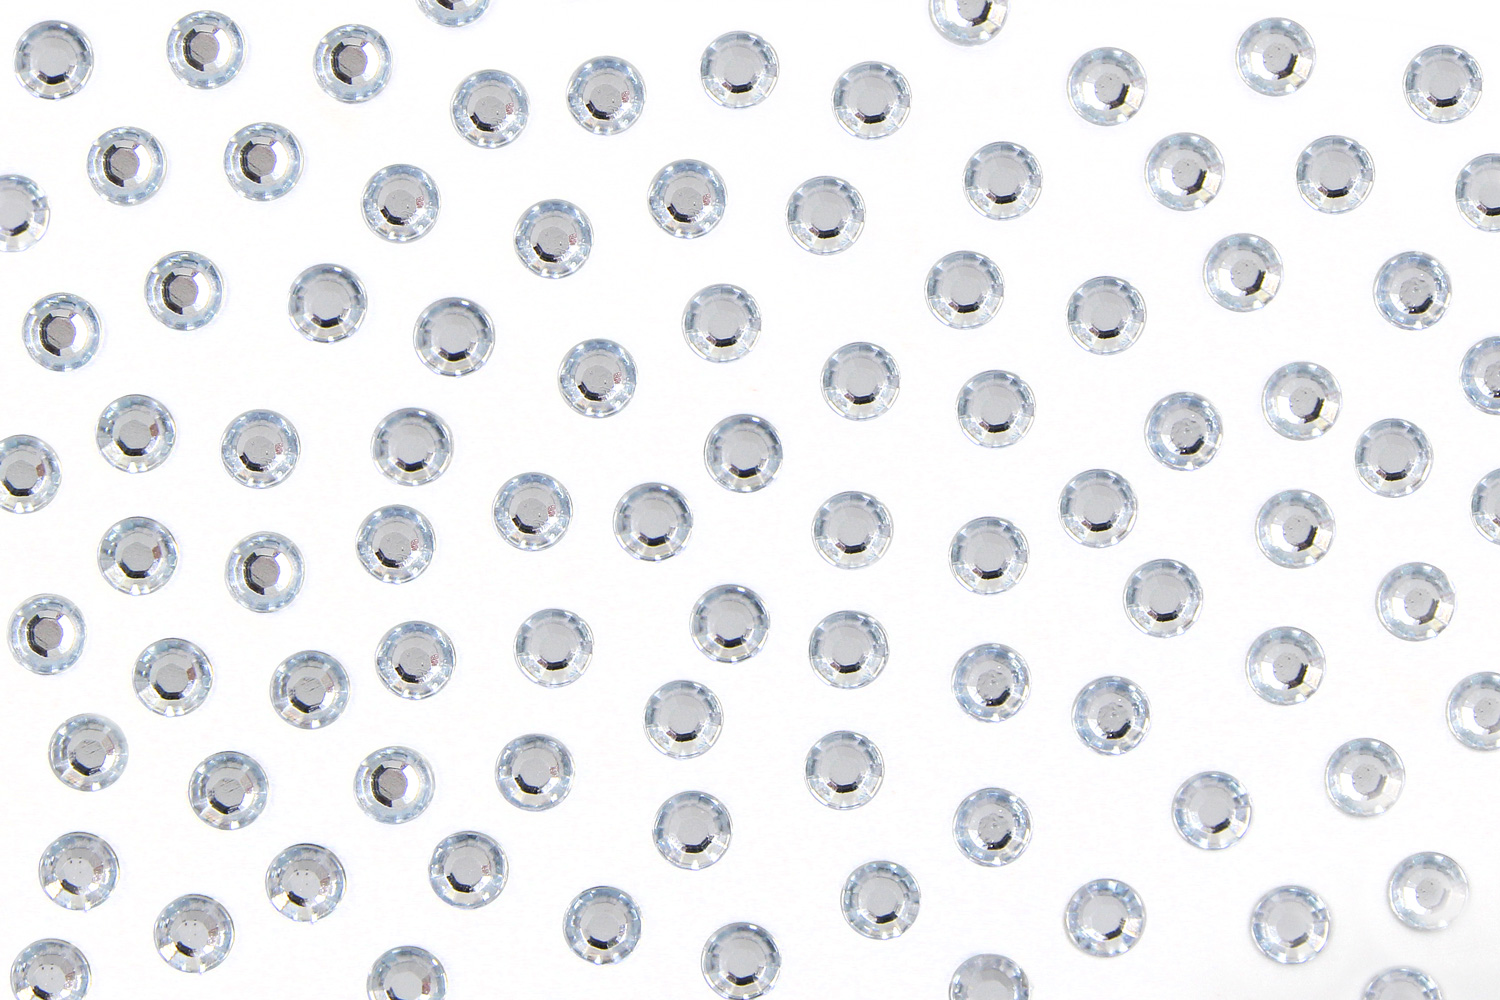 Perles de cristal en verre arc-en-ciel artisanales chakras guirlande attrape -soleil boule de cristal